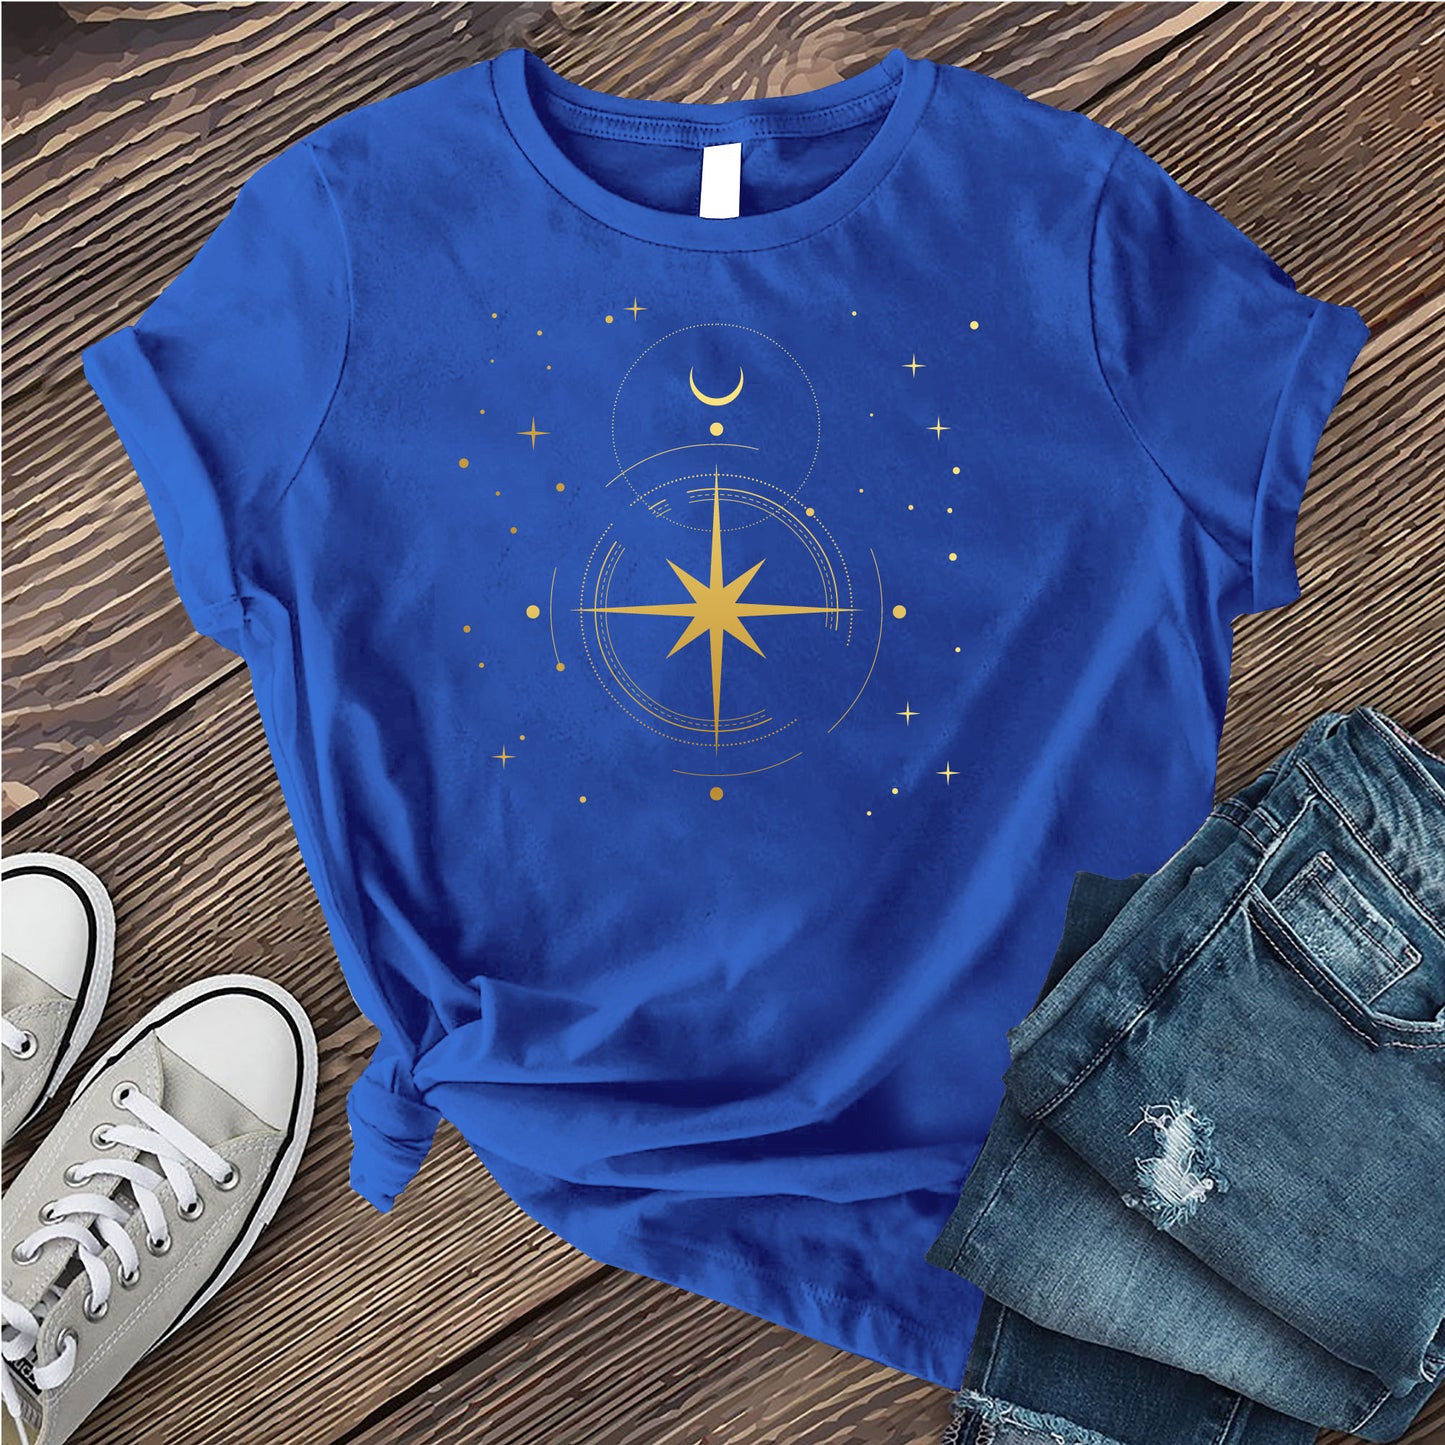 Simple Polaris Compass T-shirt